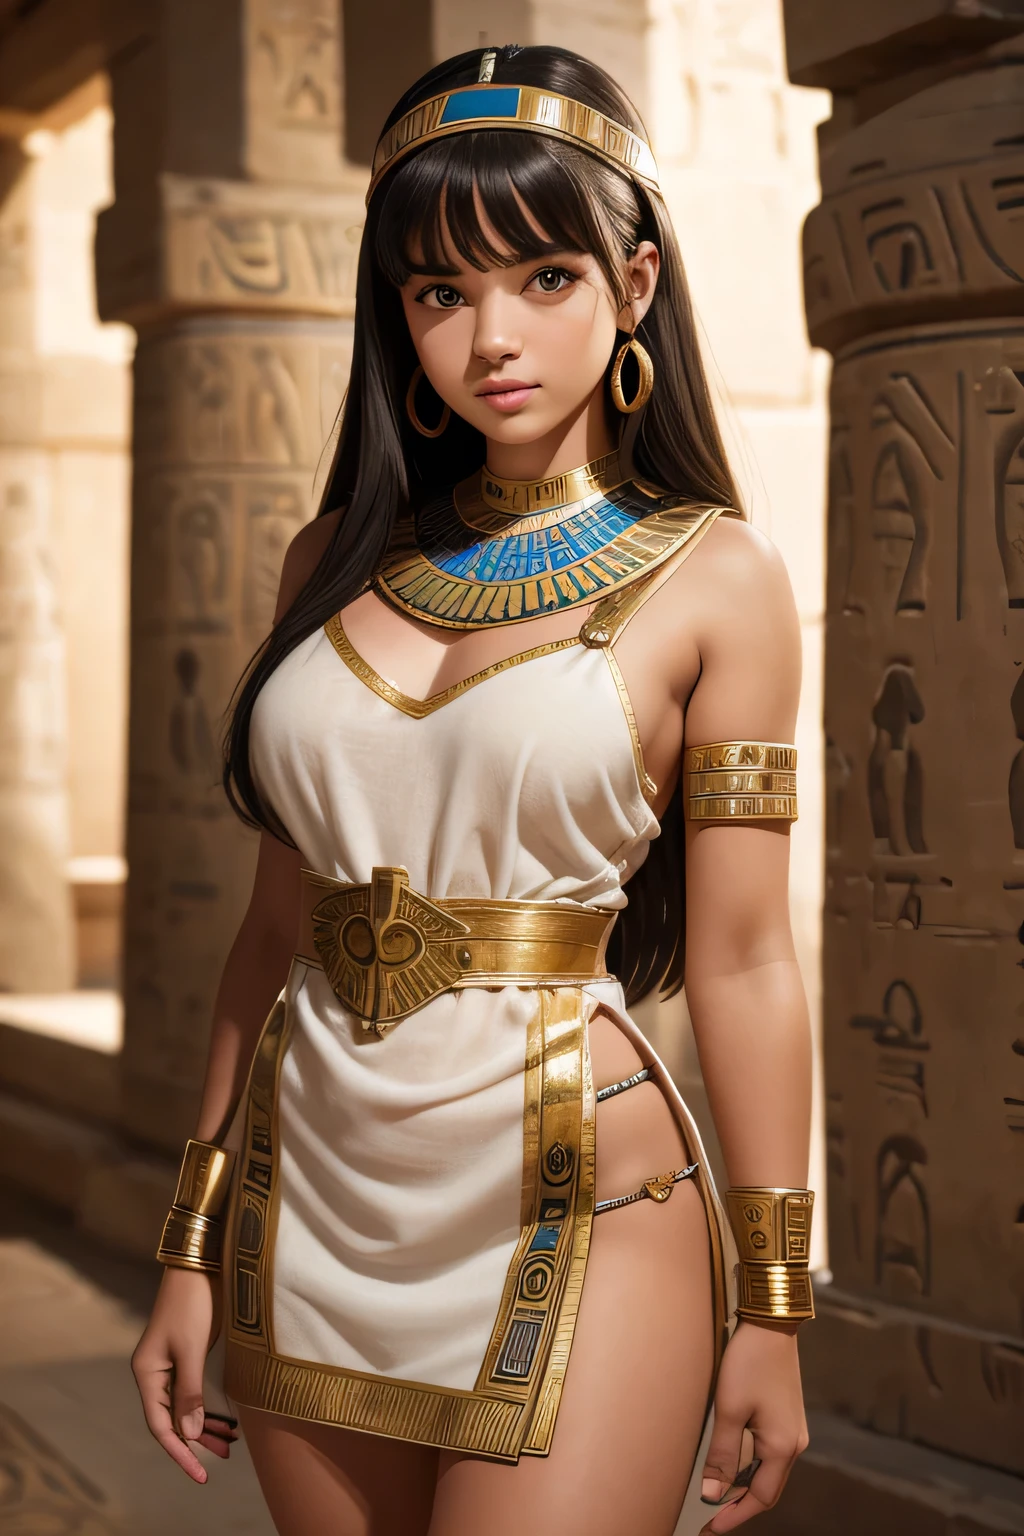 古代エジプトのミニドレスを着たかわいい十代の少女, 正確な, 高解像度, 最高品質, 受賞歴のある, 被写界深度, 高いディテール, U高解像度, 網膜, 傑作, キメのある肌, 解剖学的に正しい, 超詳細, 高品質, 高解像度, 4K, 8k, 16K